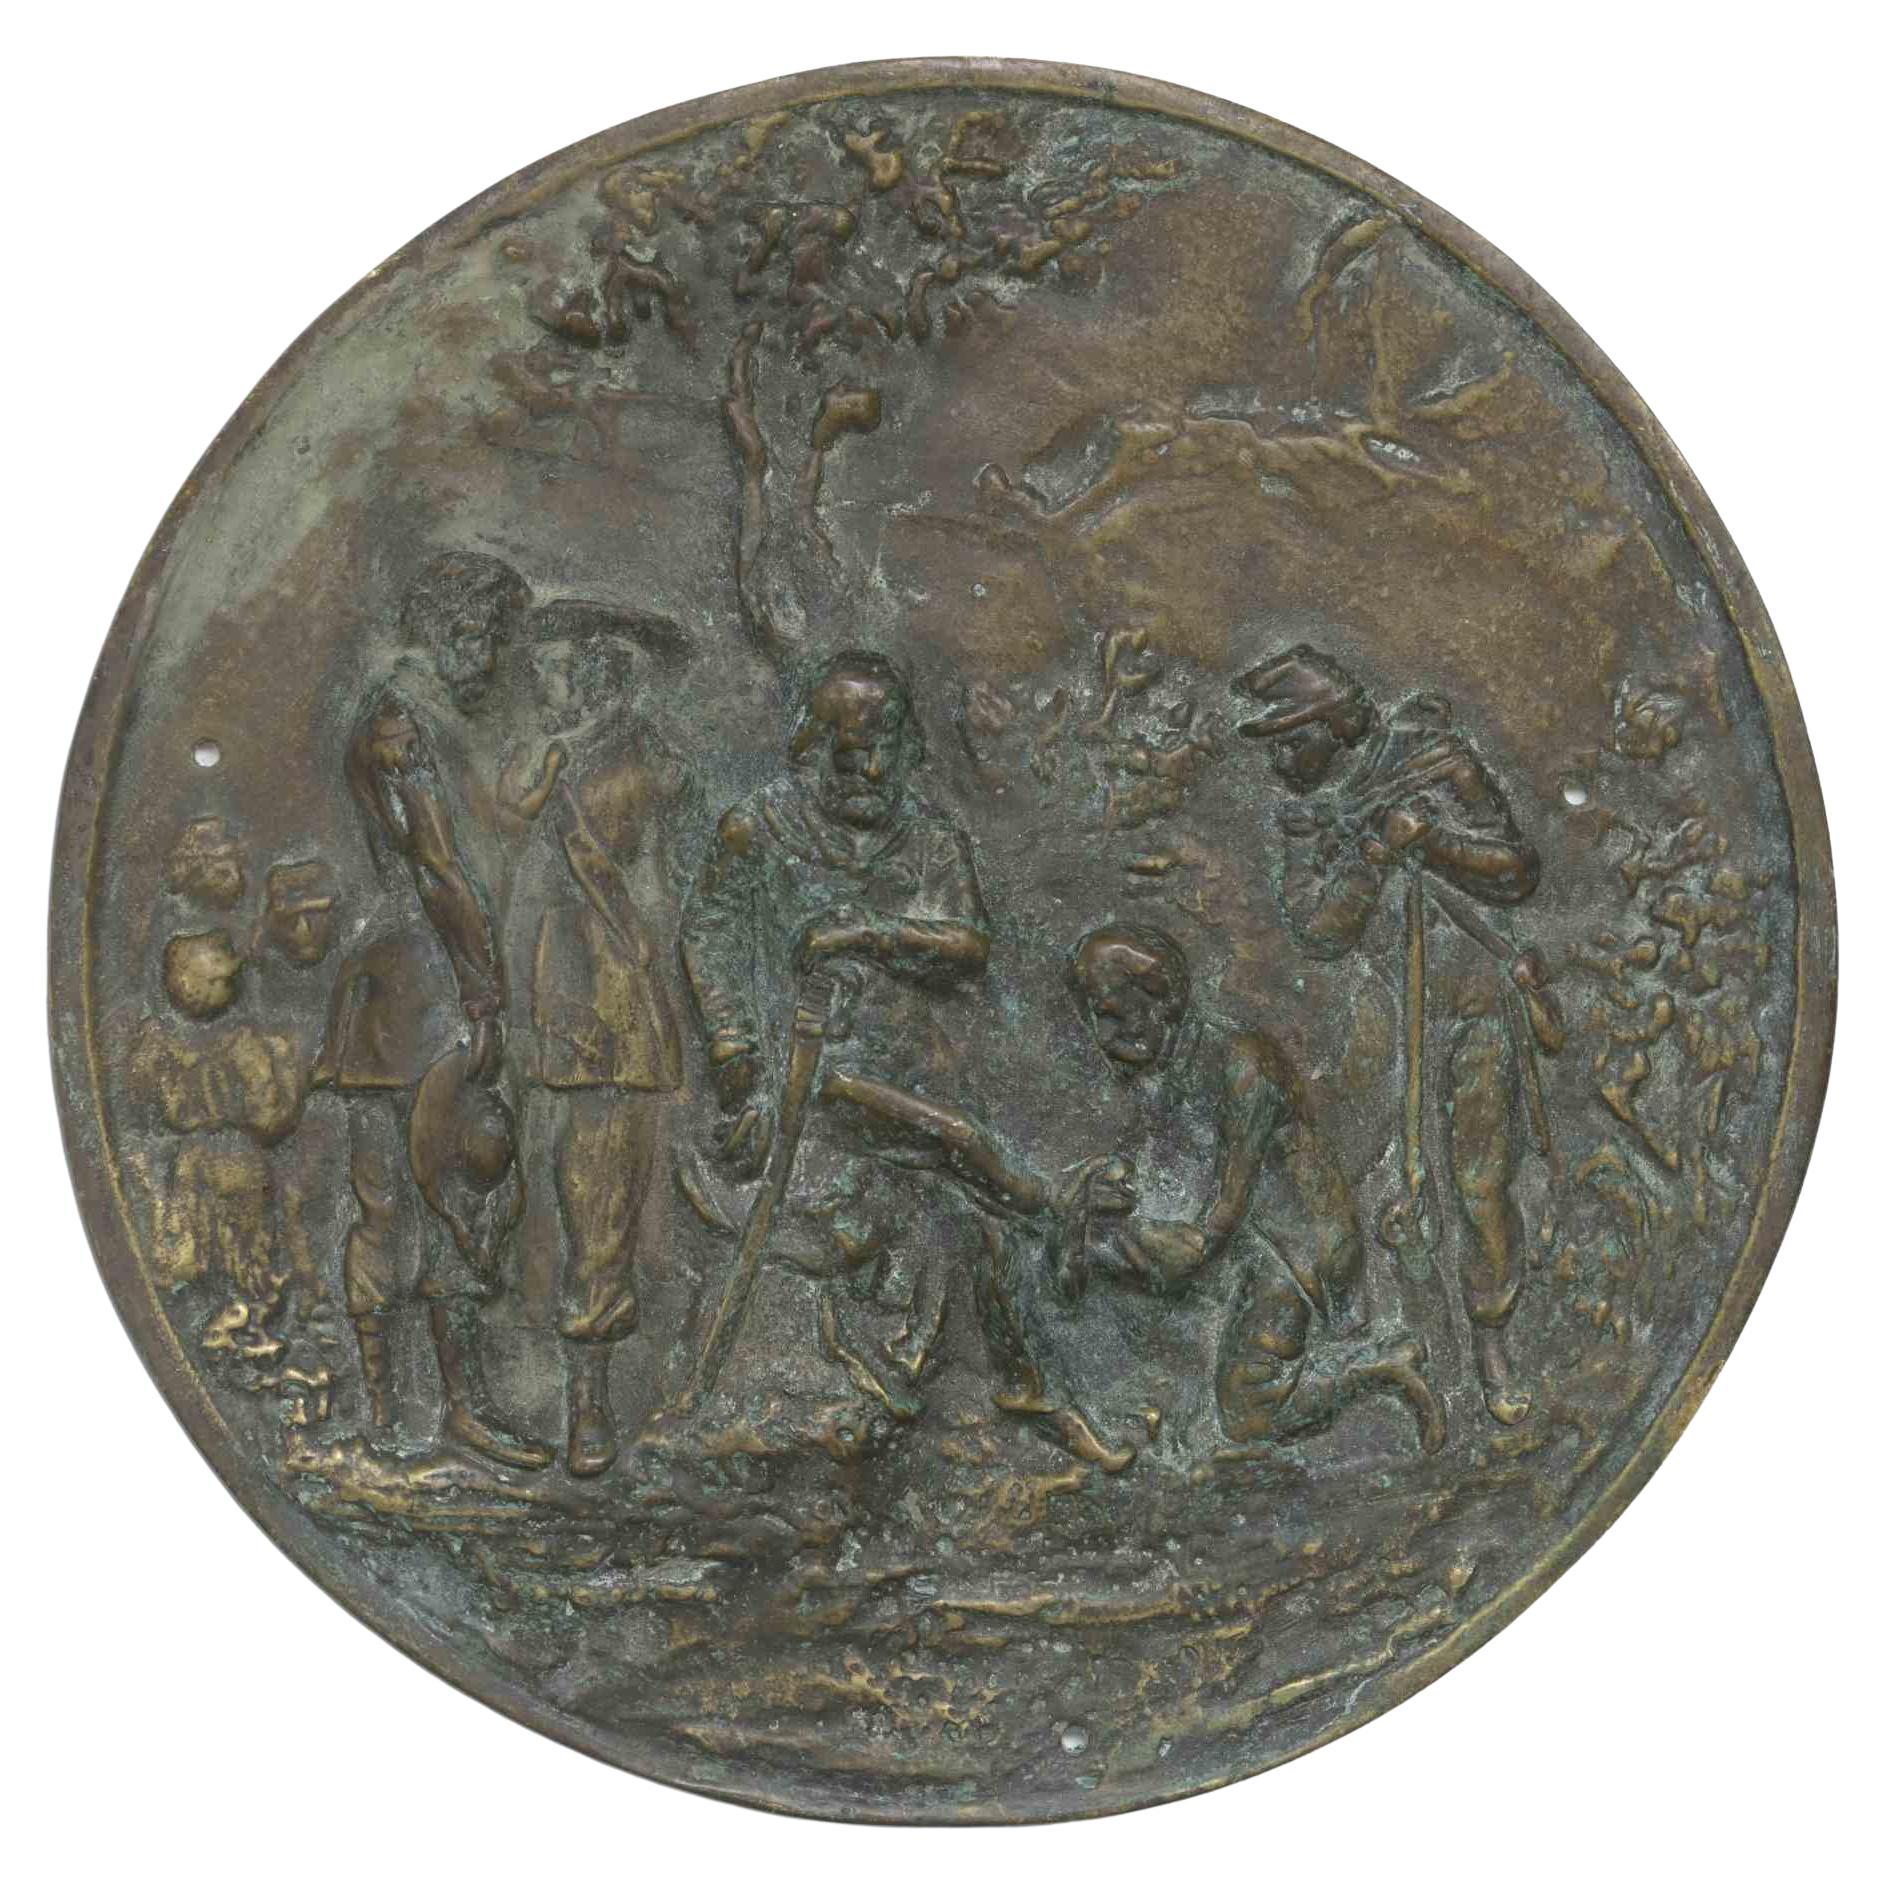 Garibaldi-Medaille, spätes 19. Jahrhundert